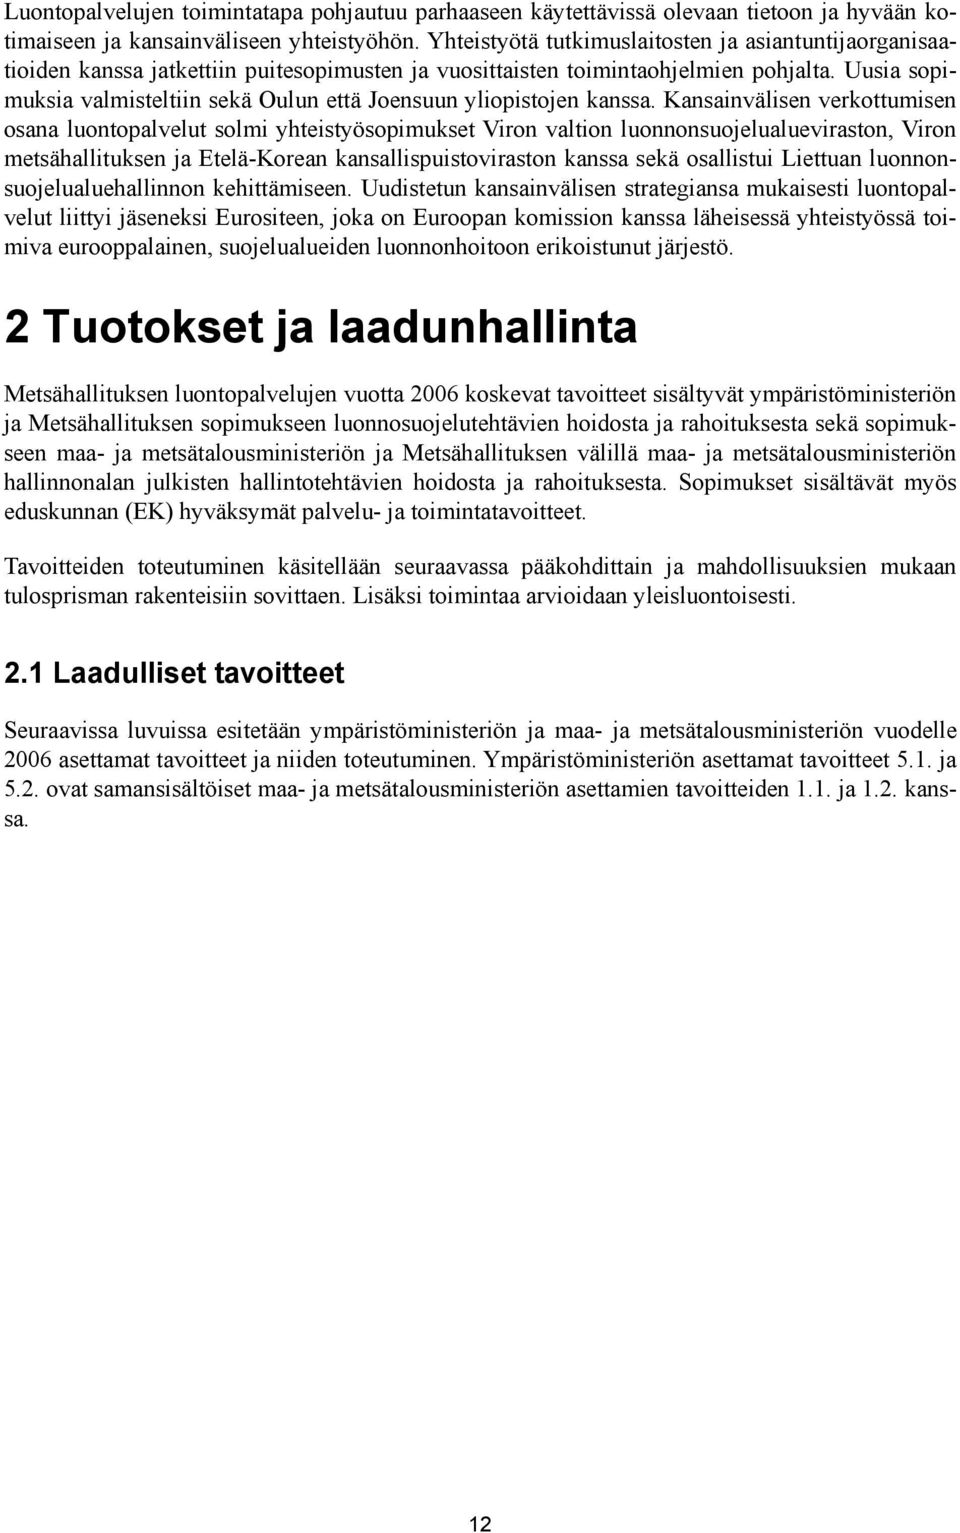 Uusia sopimuksia valmisteltiin sekä Oulun että Joensuun yliopistojen kanssa.